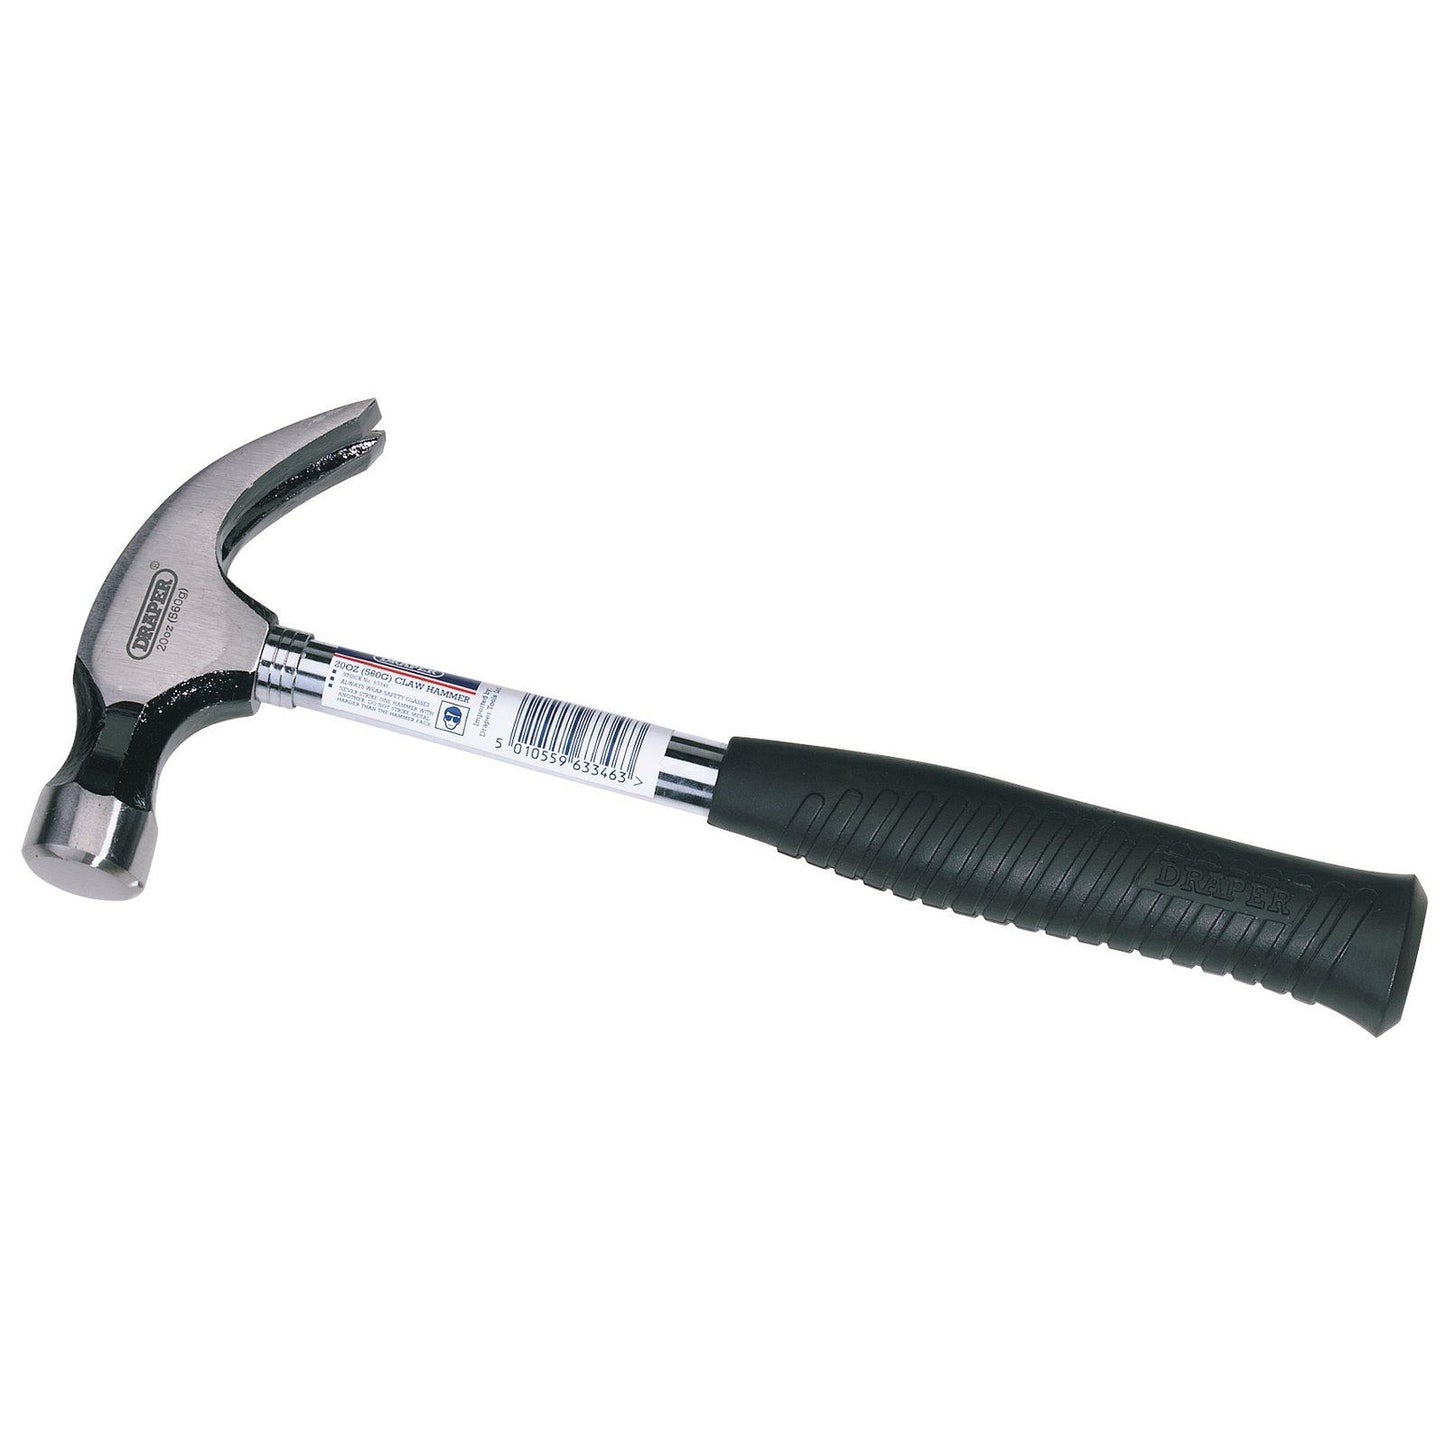 Draper Tubular Shaft Claw Hammer (560G/20oz) 63346